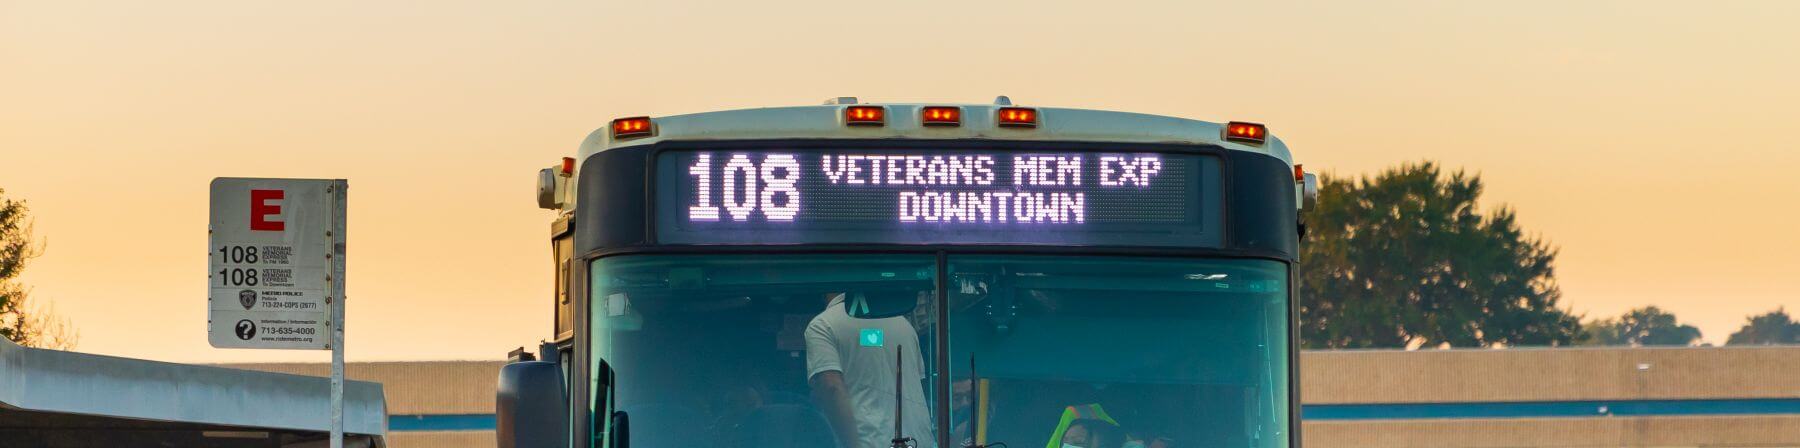 108 Veterans Memorial Express bus